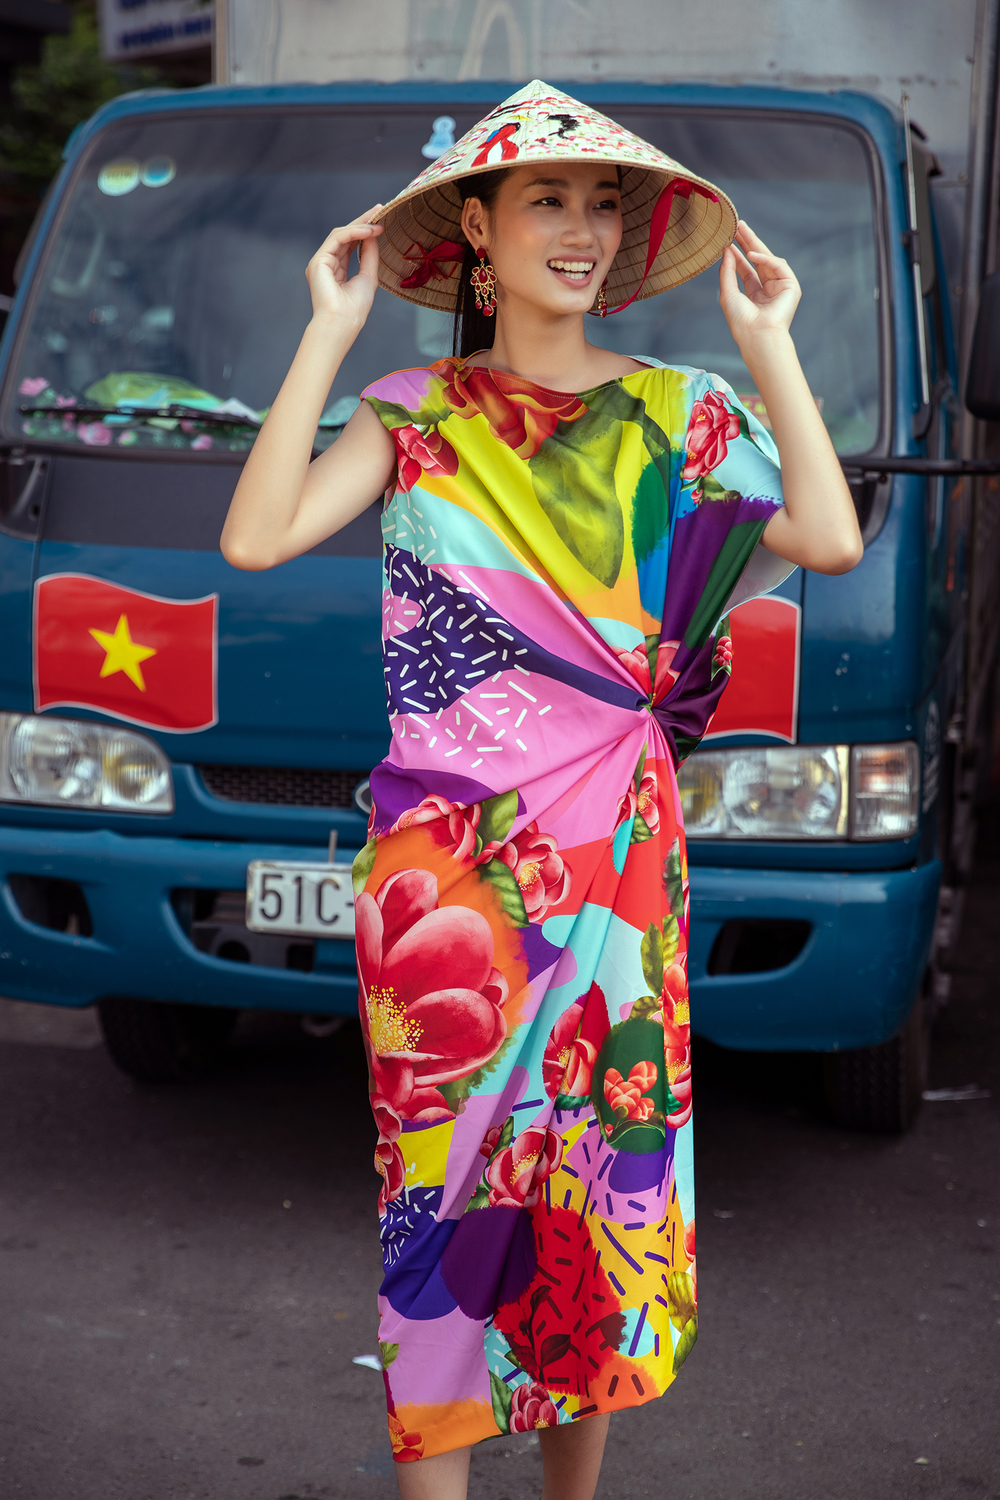 Á quân The Face 2018 diện váy áo rực rỡ sắc xuân của NTK Vũ Ngọc&Son